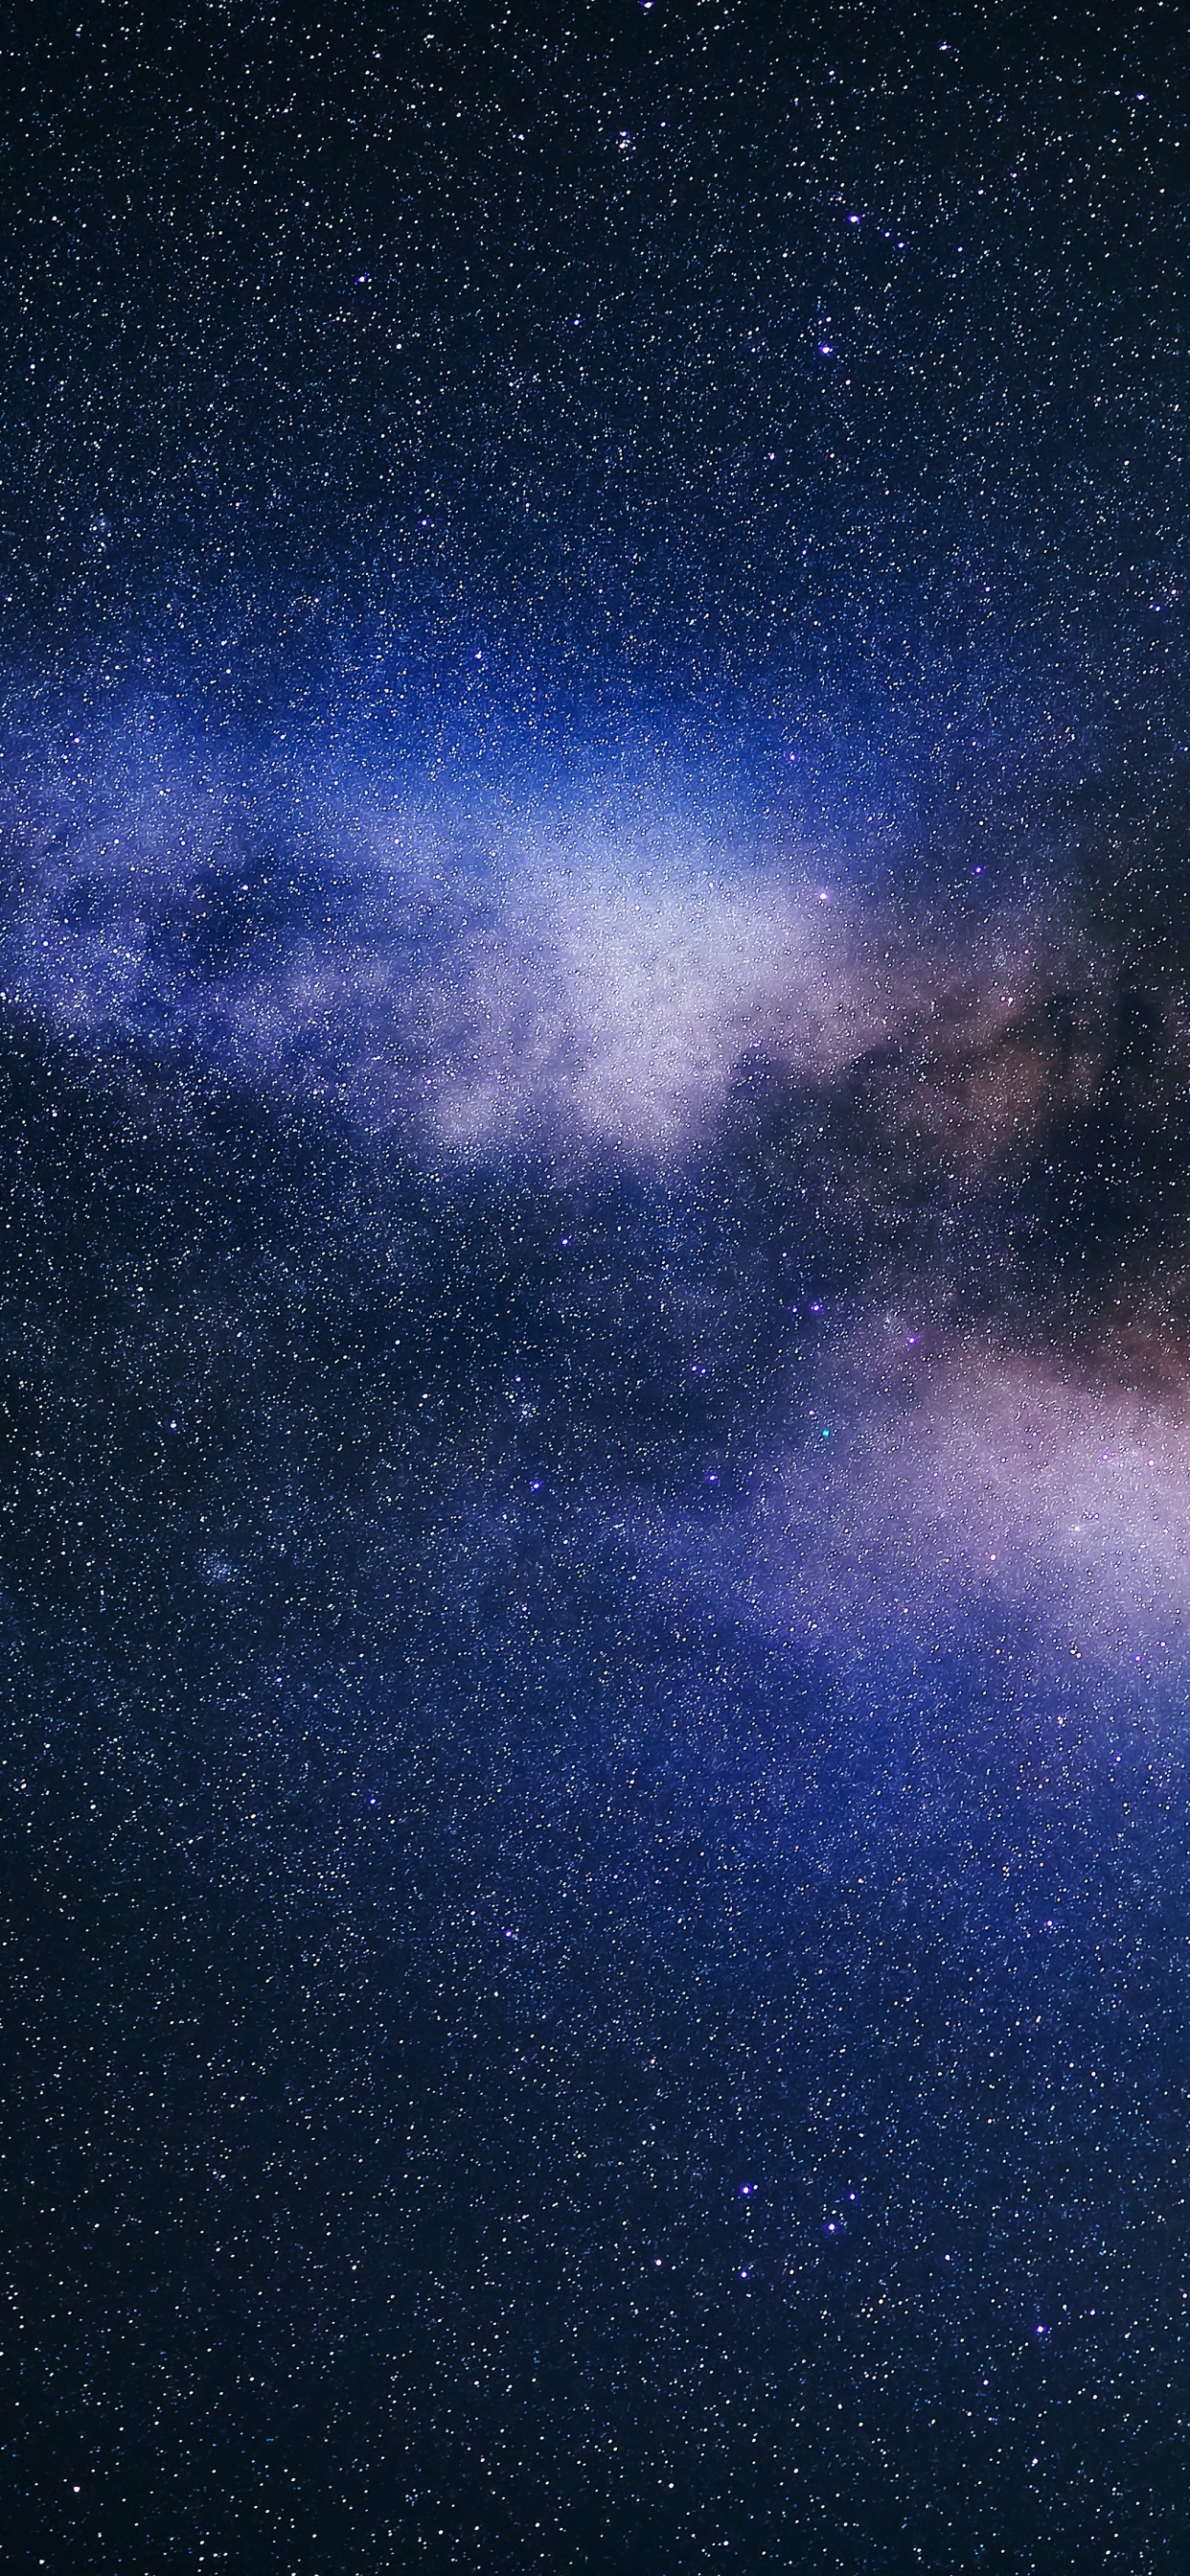 Thiên hà (Galaxy): Hãy thưởng thức hình ảnh thiên hà với hàng triệu vì sao đang chờ đợi bạn khám phá. Những cung đường tinh tú đầy mê hoặc và bí ẩn sẽ đưa bạn trong một hành trình không thể quên.